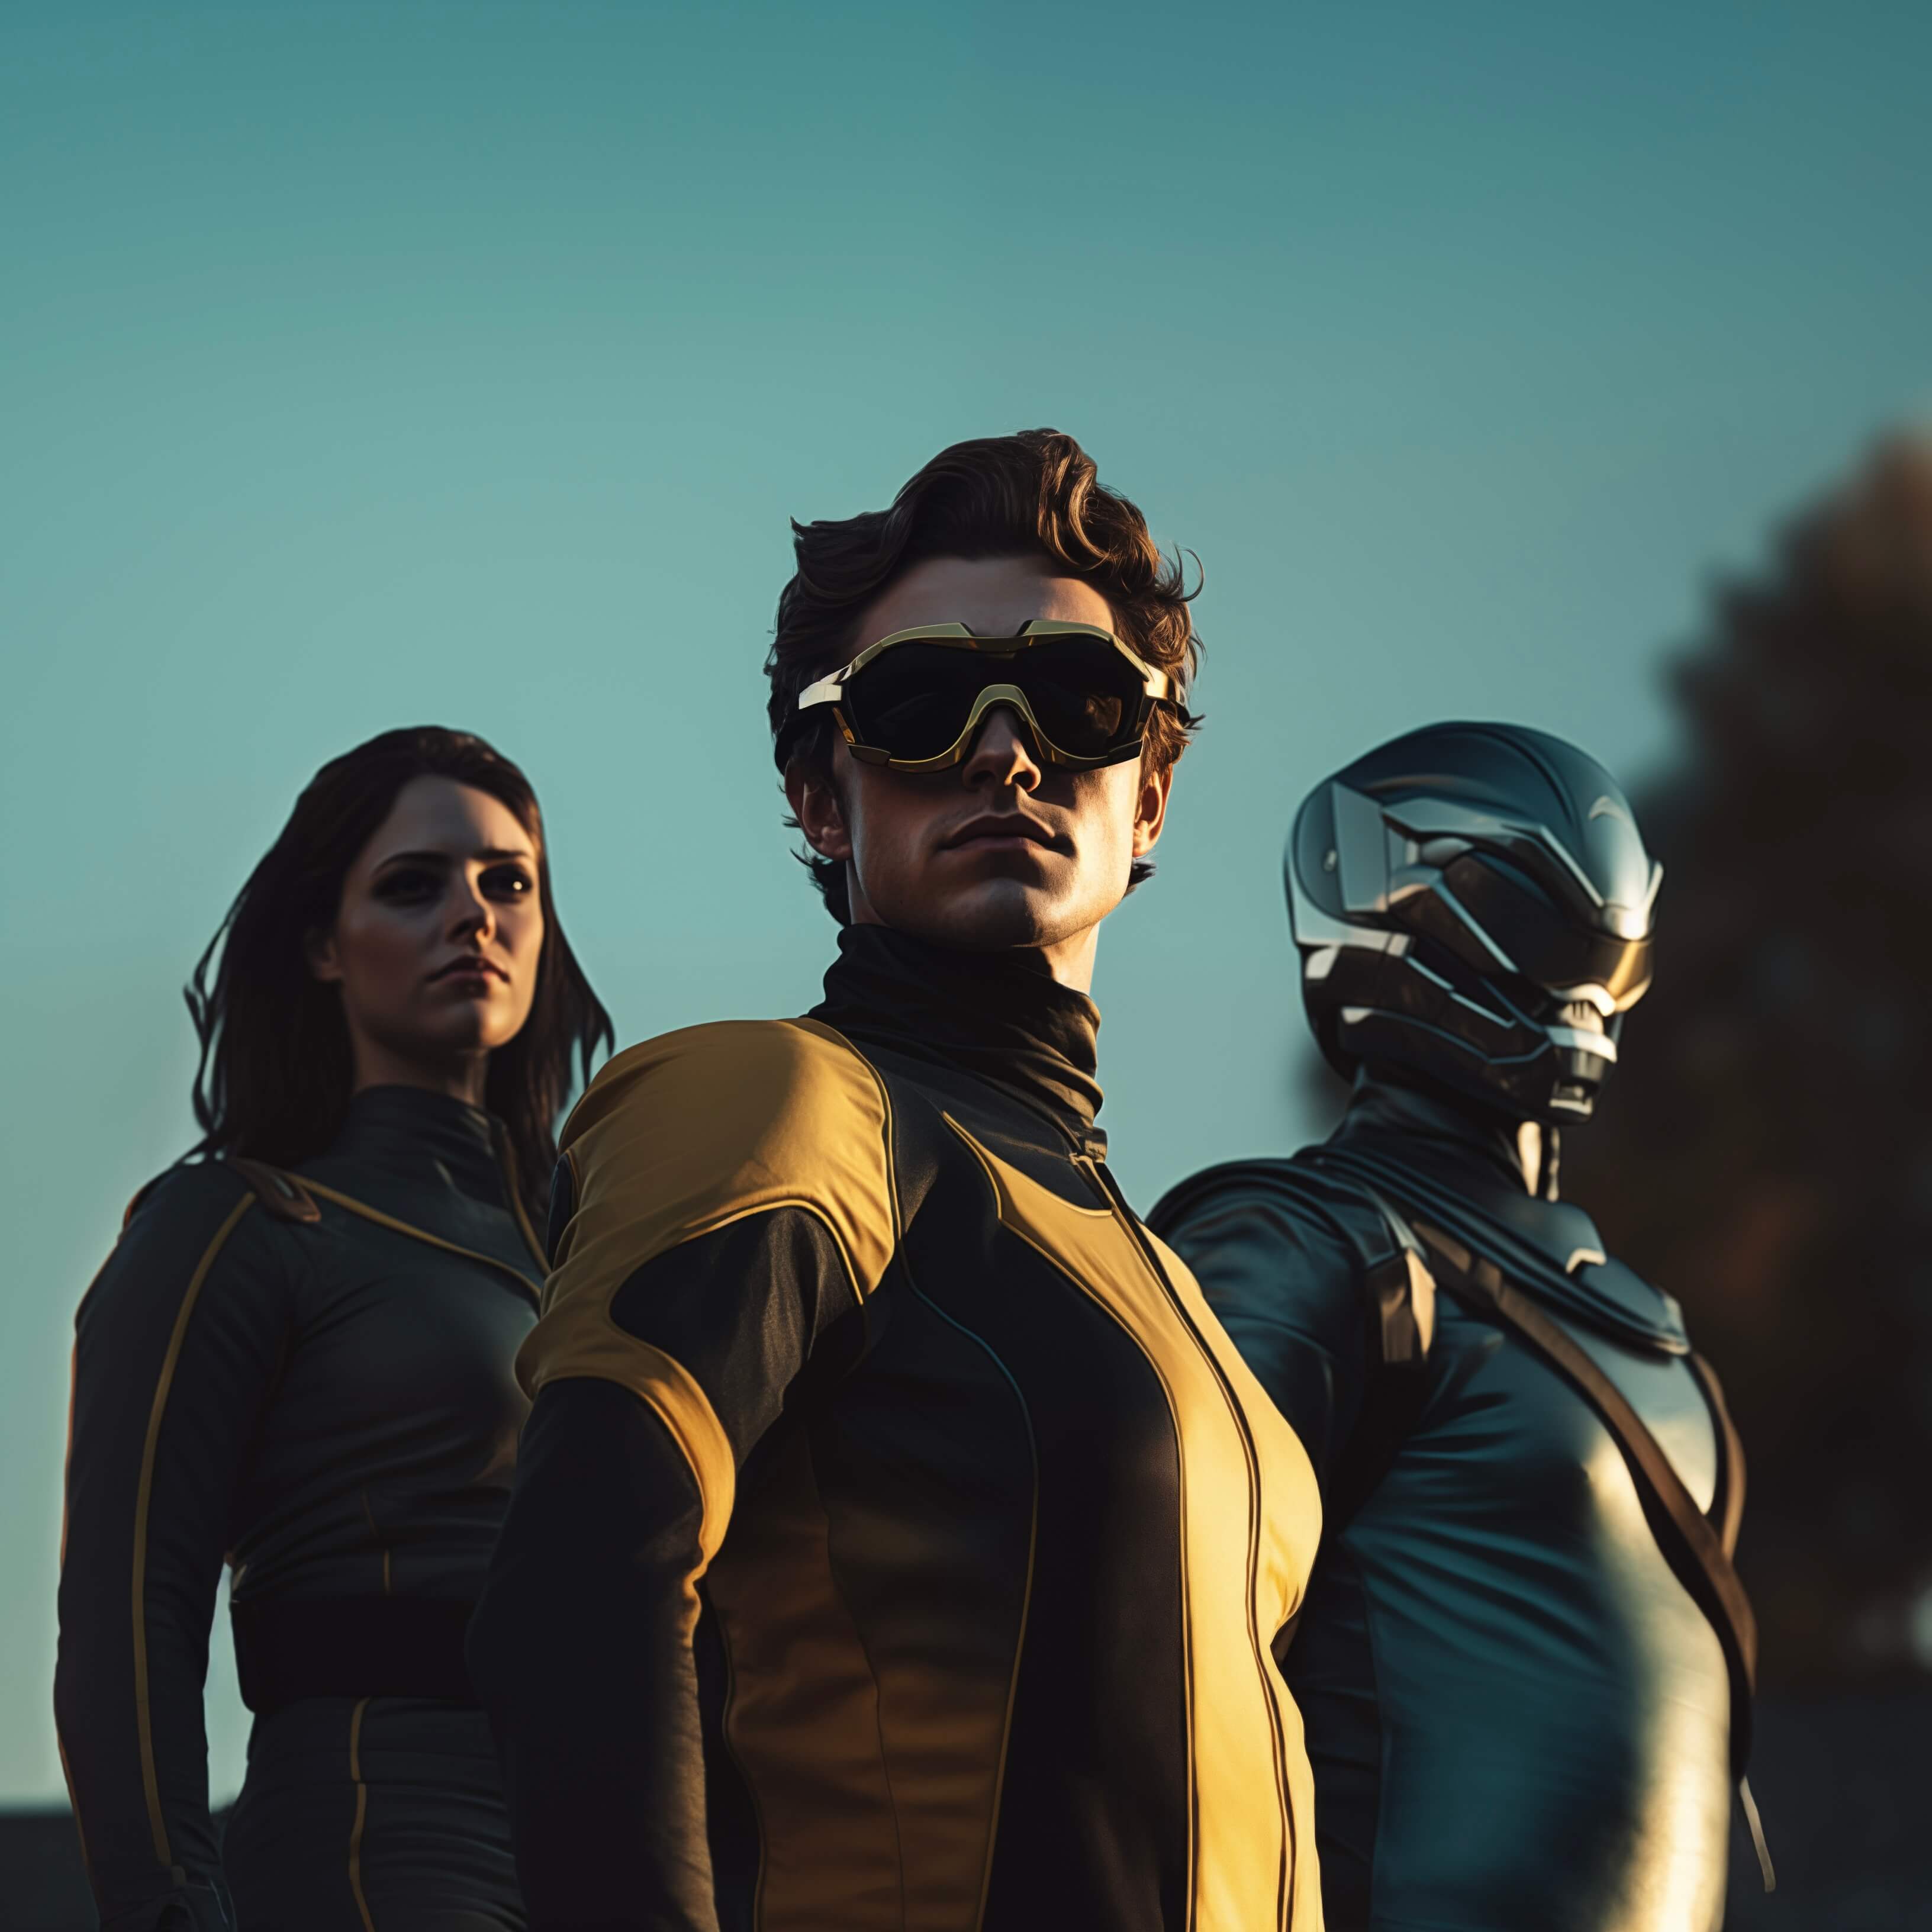 Drei Personen in futuristischen Uniformen stehen selbstbewusst unter einem klaren Himmel. Die Person in der Mitte trägt eine dunkle Schutzbrille, während die Person rechts einen metallischen Helm trägt, der ihr Gesicht bedeckt.